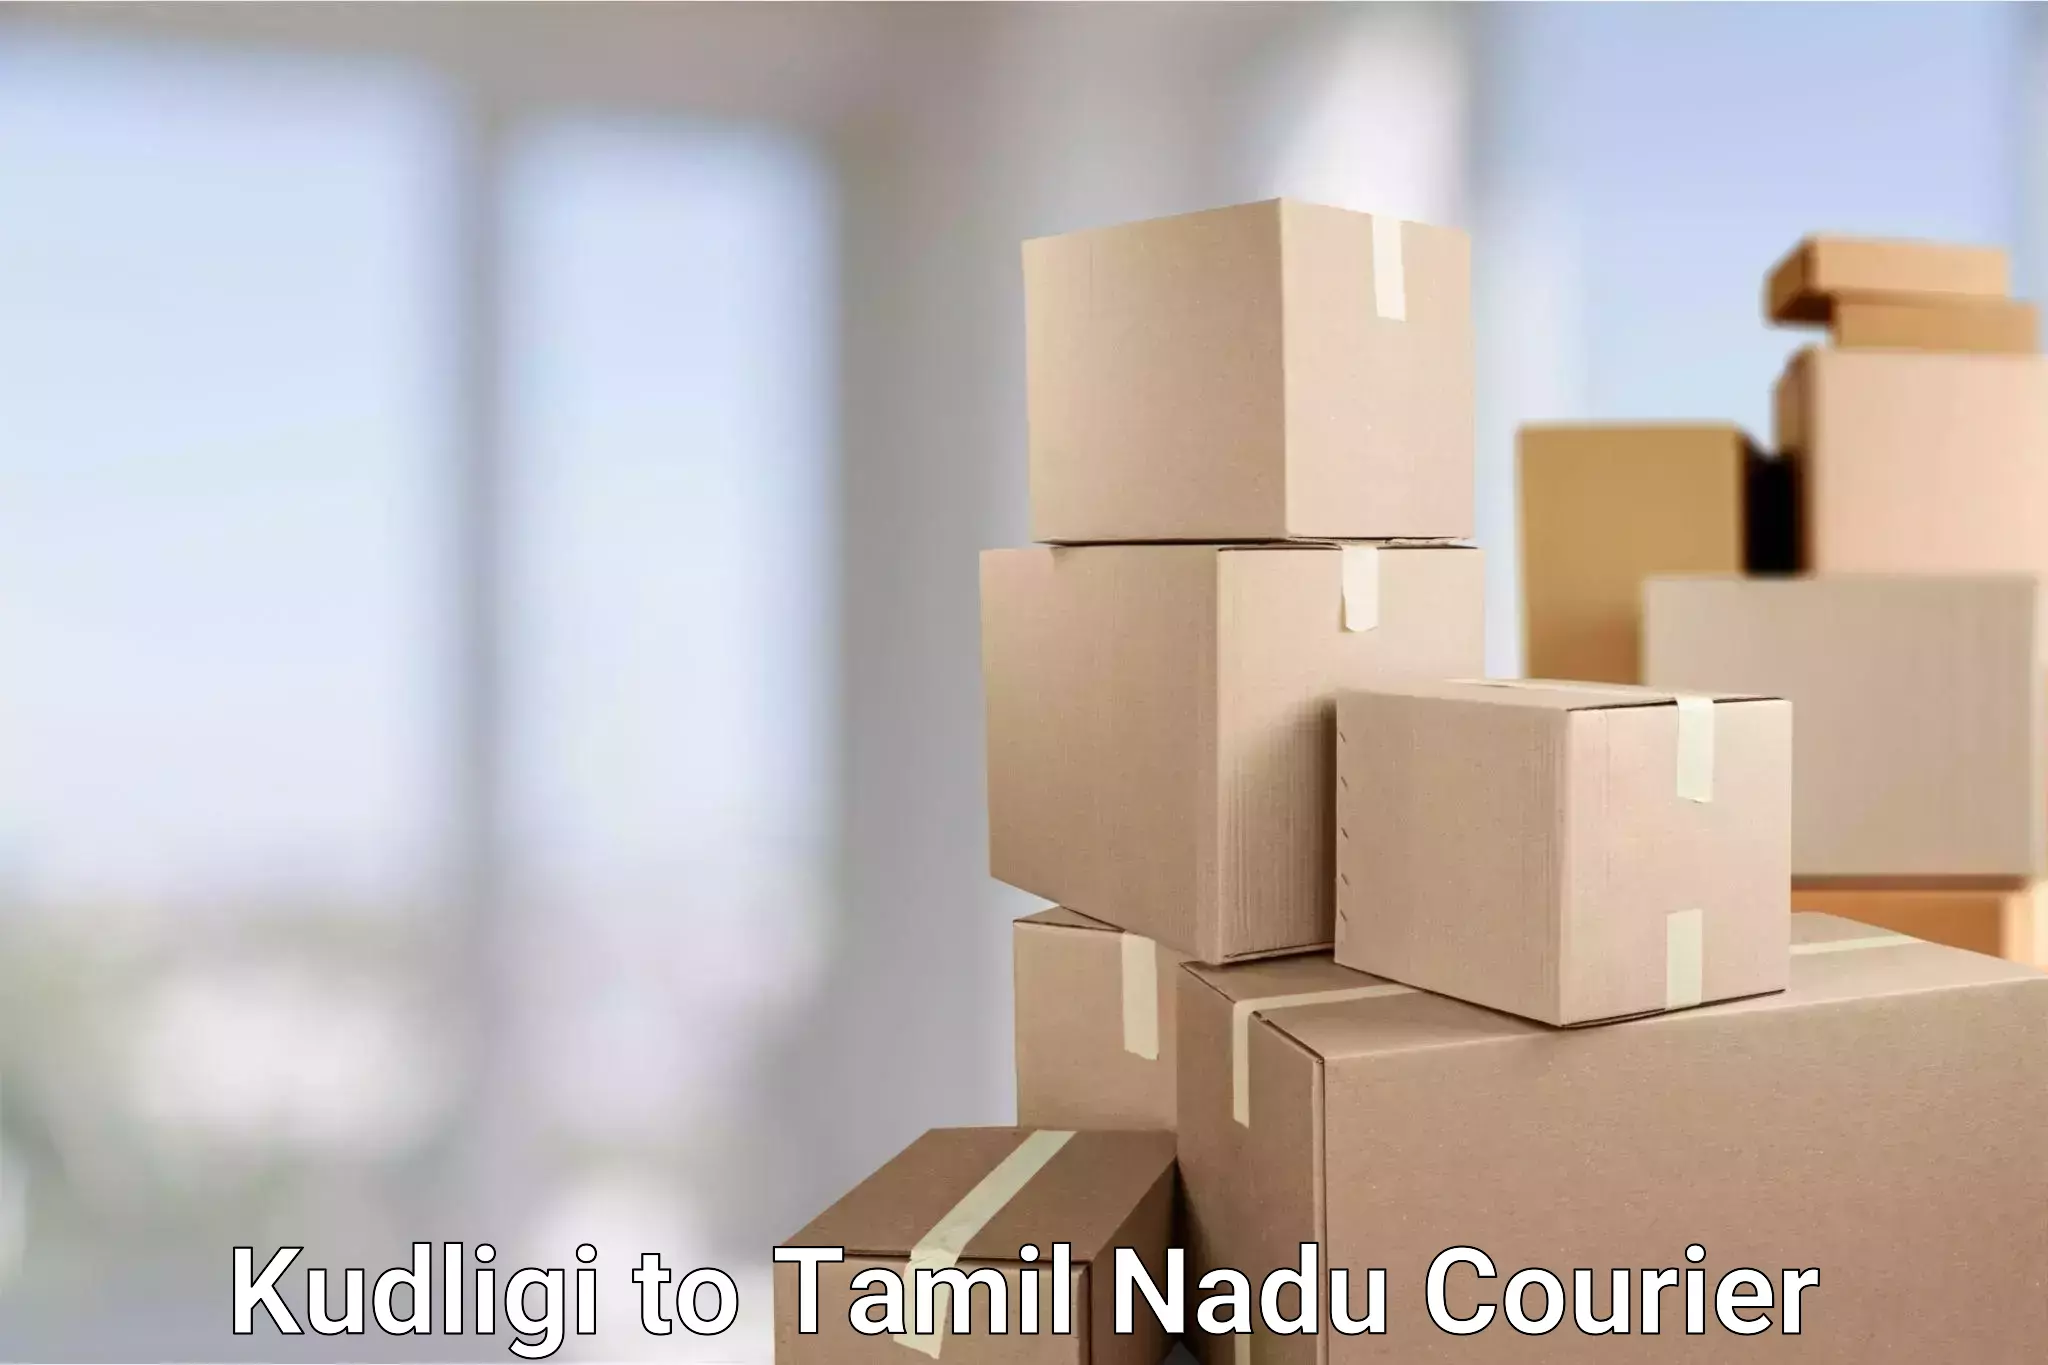 Nationwide parcel services Kudligi to Tamil Nadu